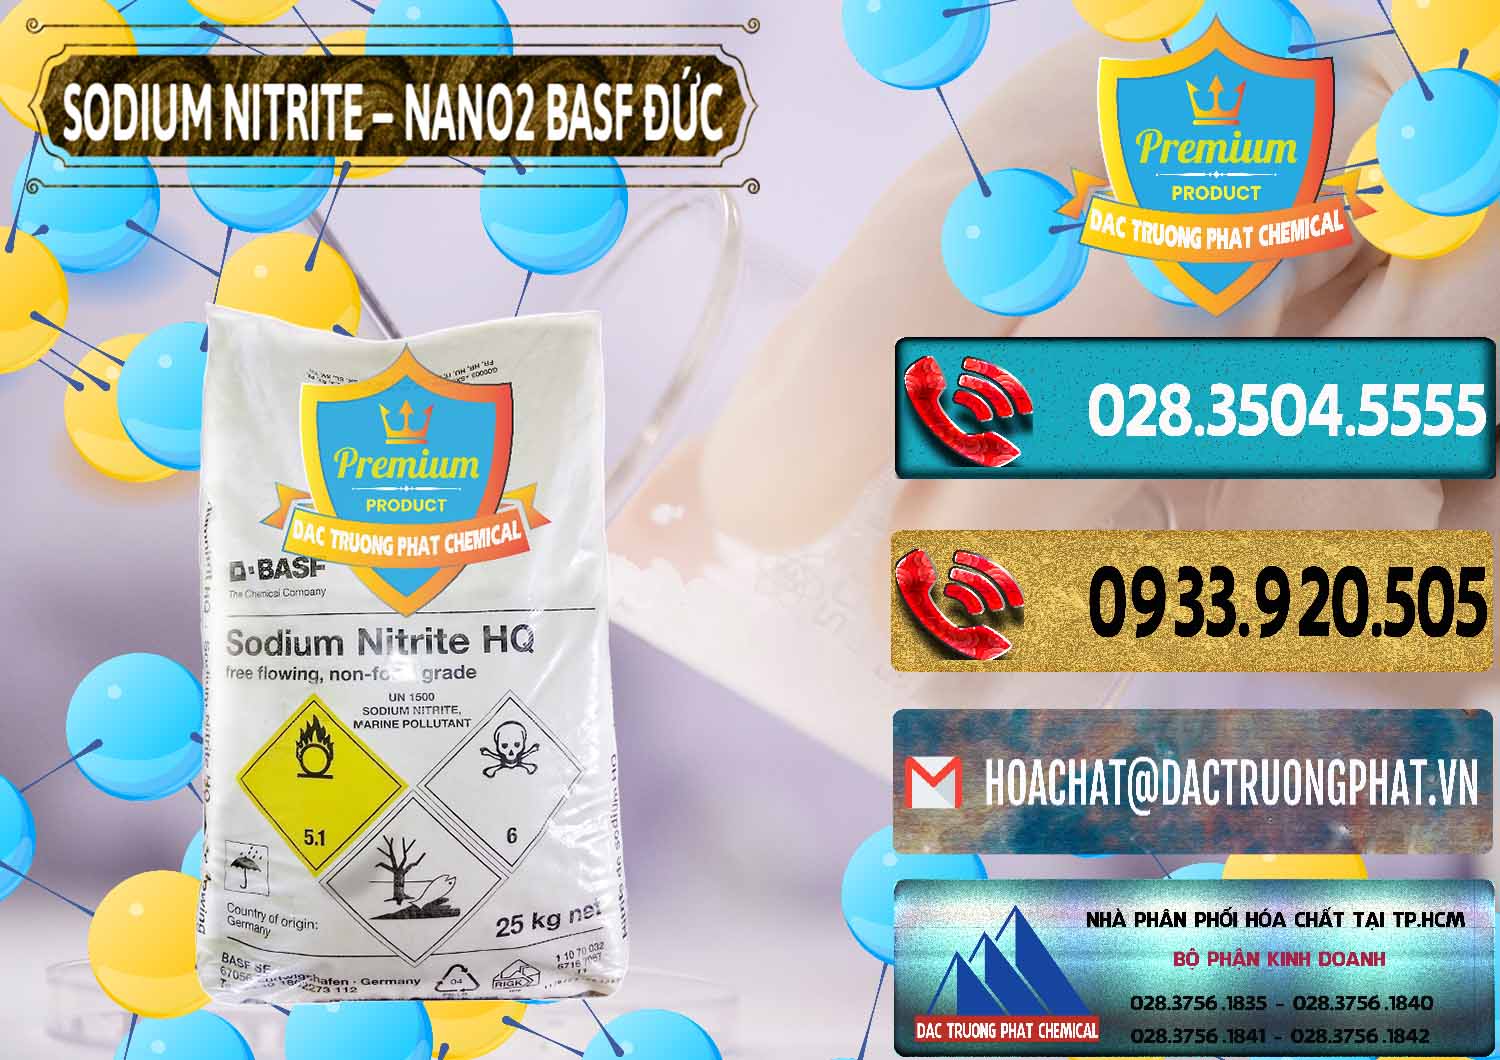 Công ty nhập khẩu & bán Sodium Nitrite - NANO2 Đức BASF Germany - 0148 - Chuyên cung ứng ( phân phối ) hóa chất tại TP.HCM - hoachatdetnhuom.com